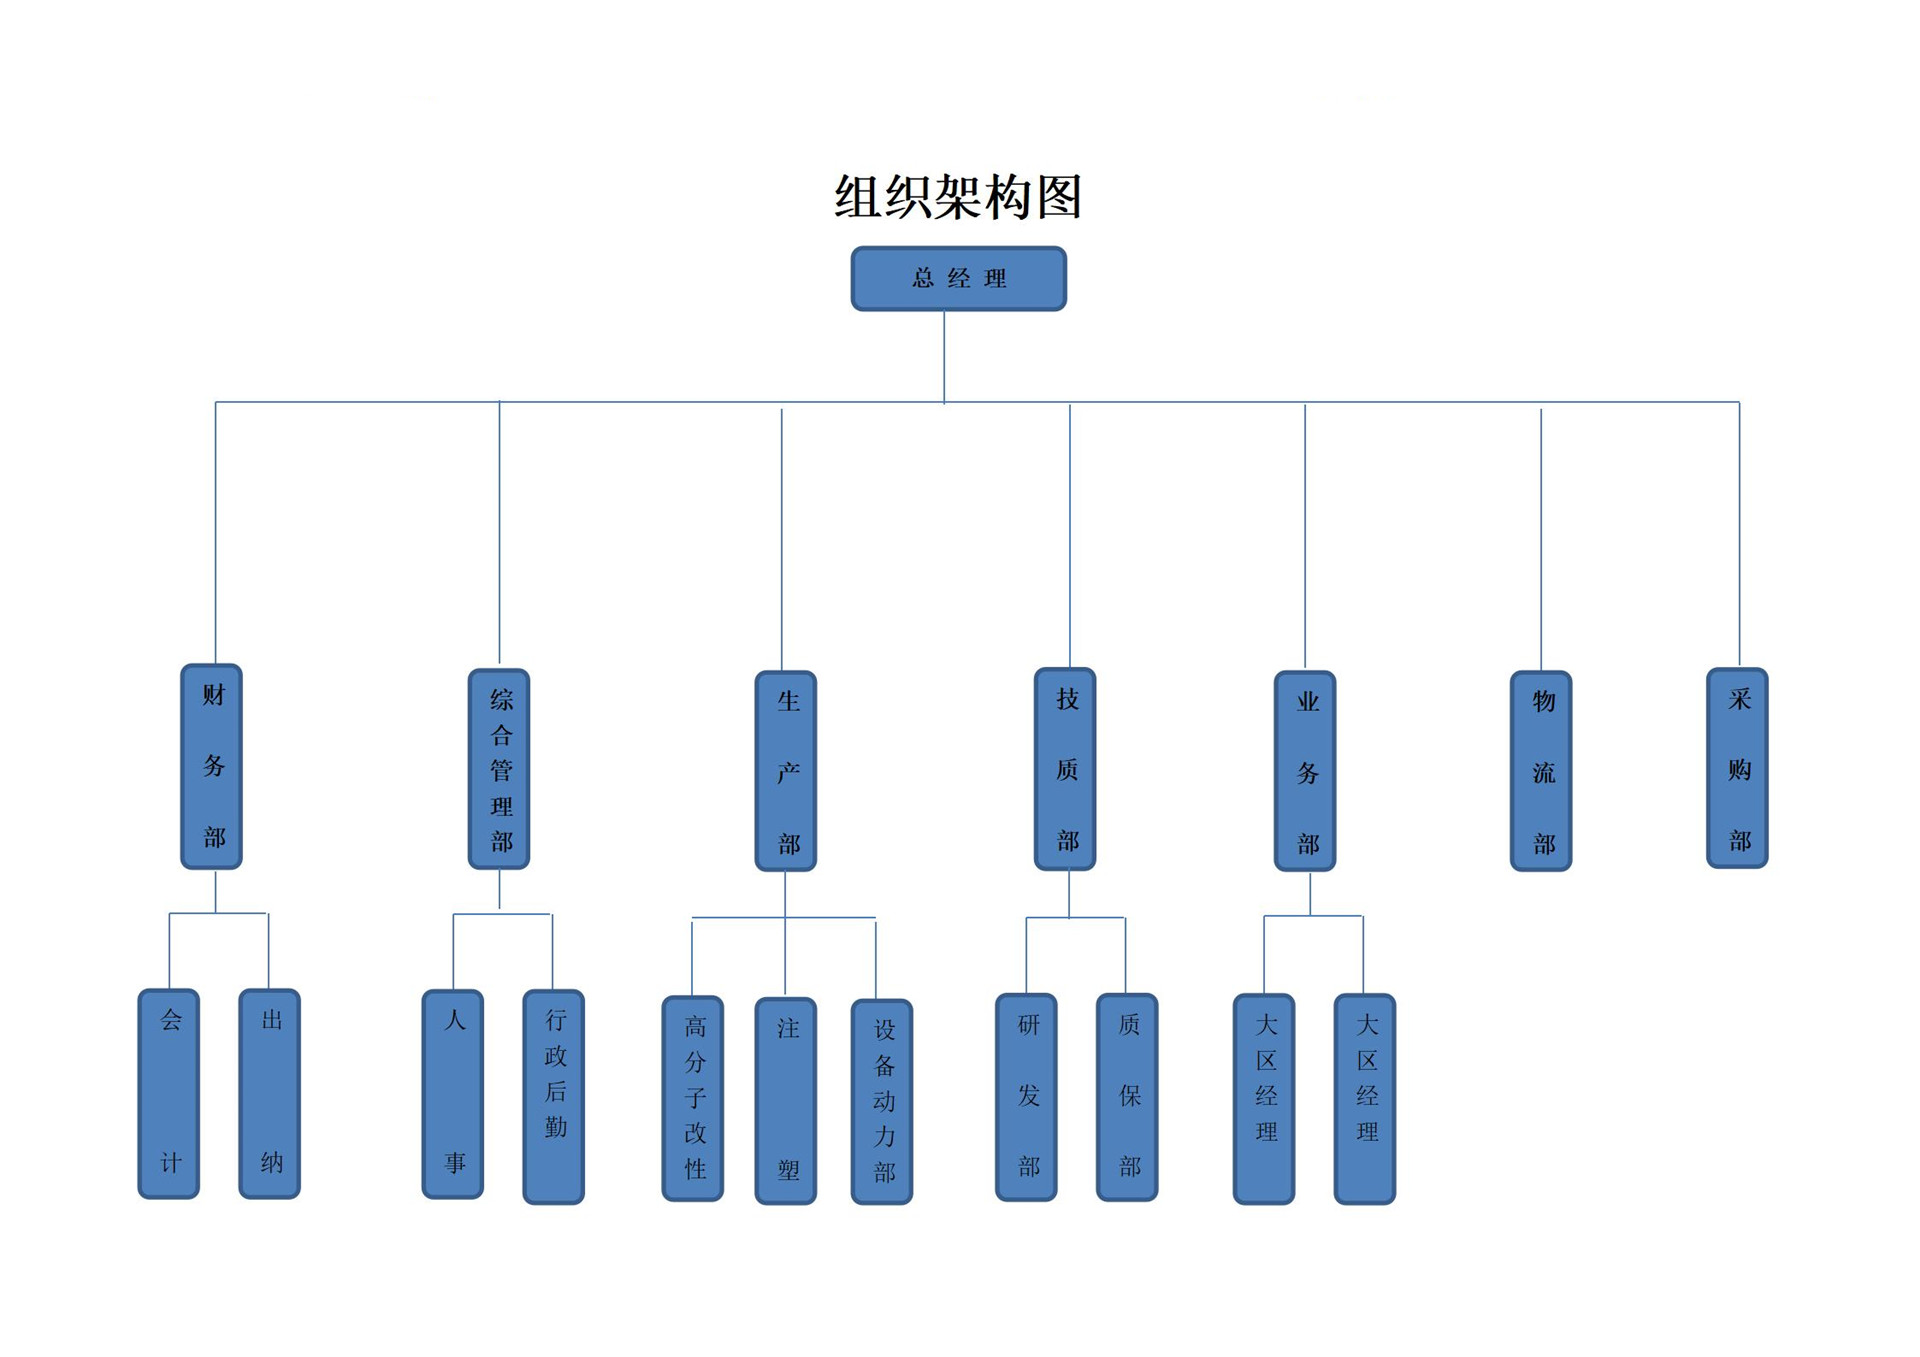 烟台市富嵩塑胶有限公司组织架构图2022.7.16 (1)_01.jpg